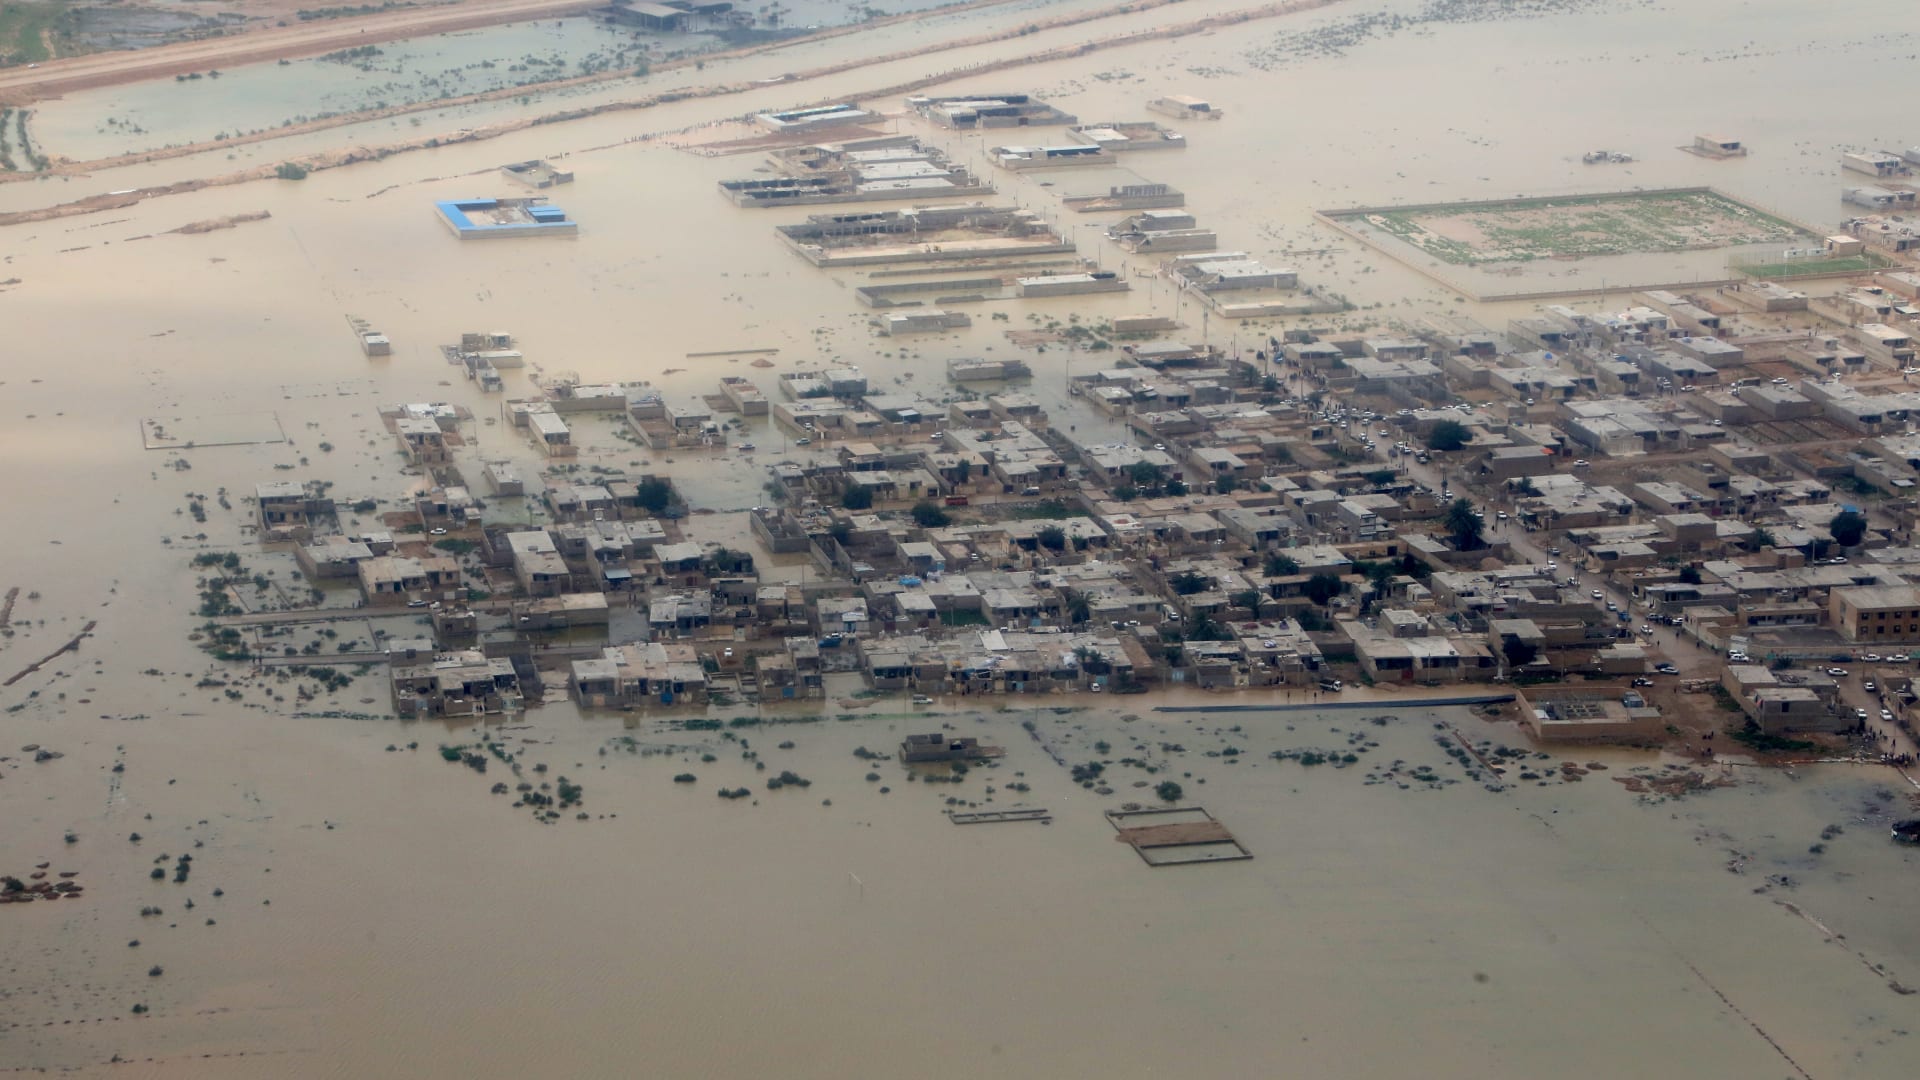 فيضانات افتراضية تغمر المدن في جميع أنحاء العالم